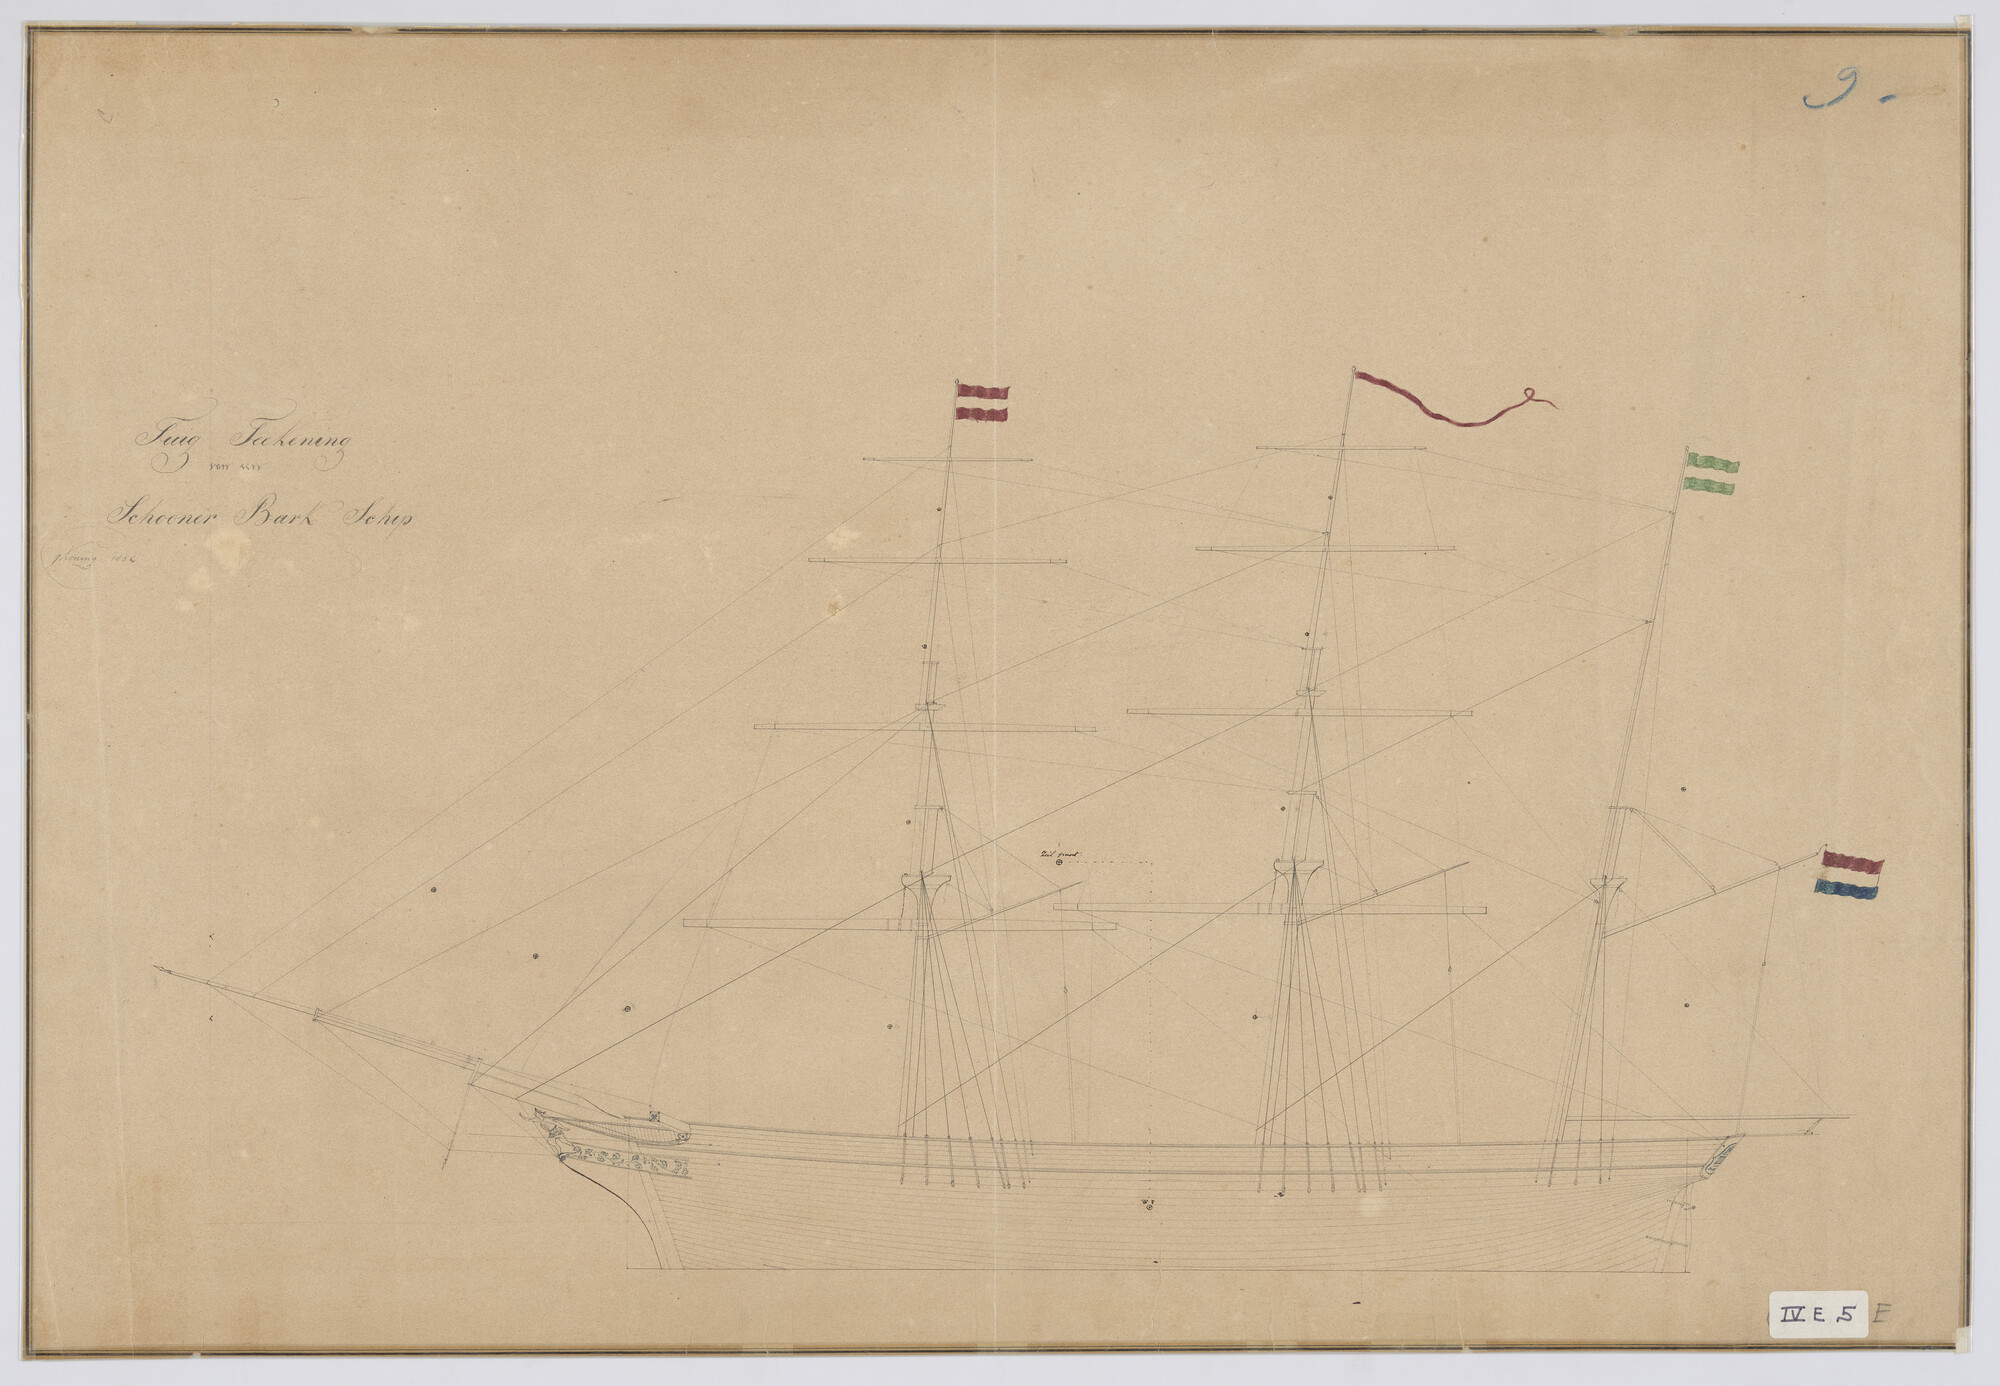 S.0305(29); Zijaanzicht met tuigplan Barkschip; technische tekening